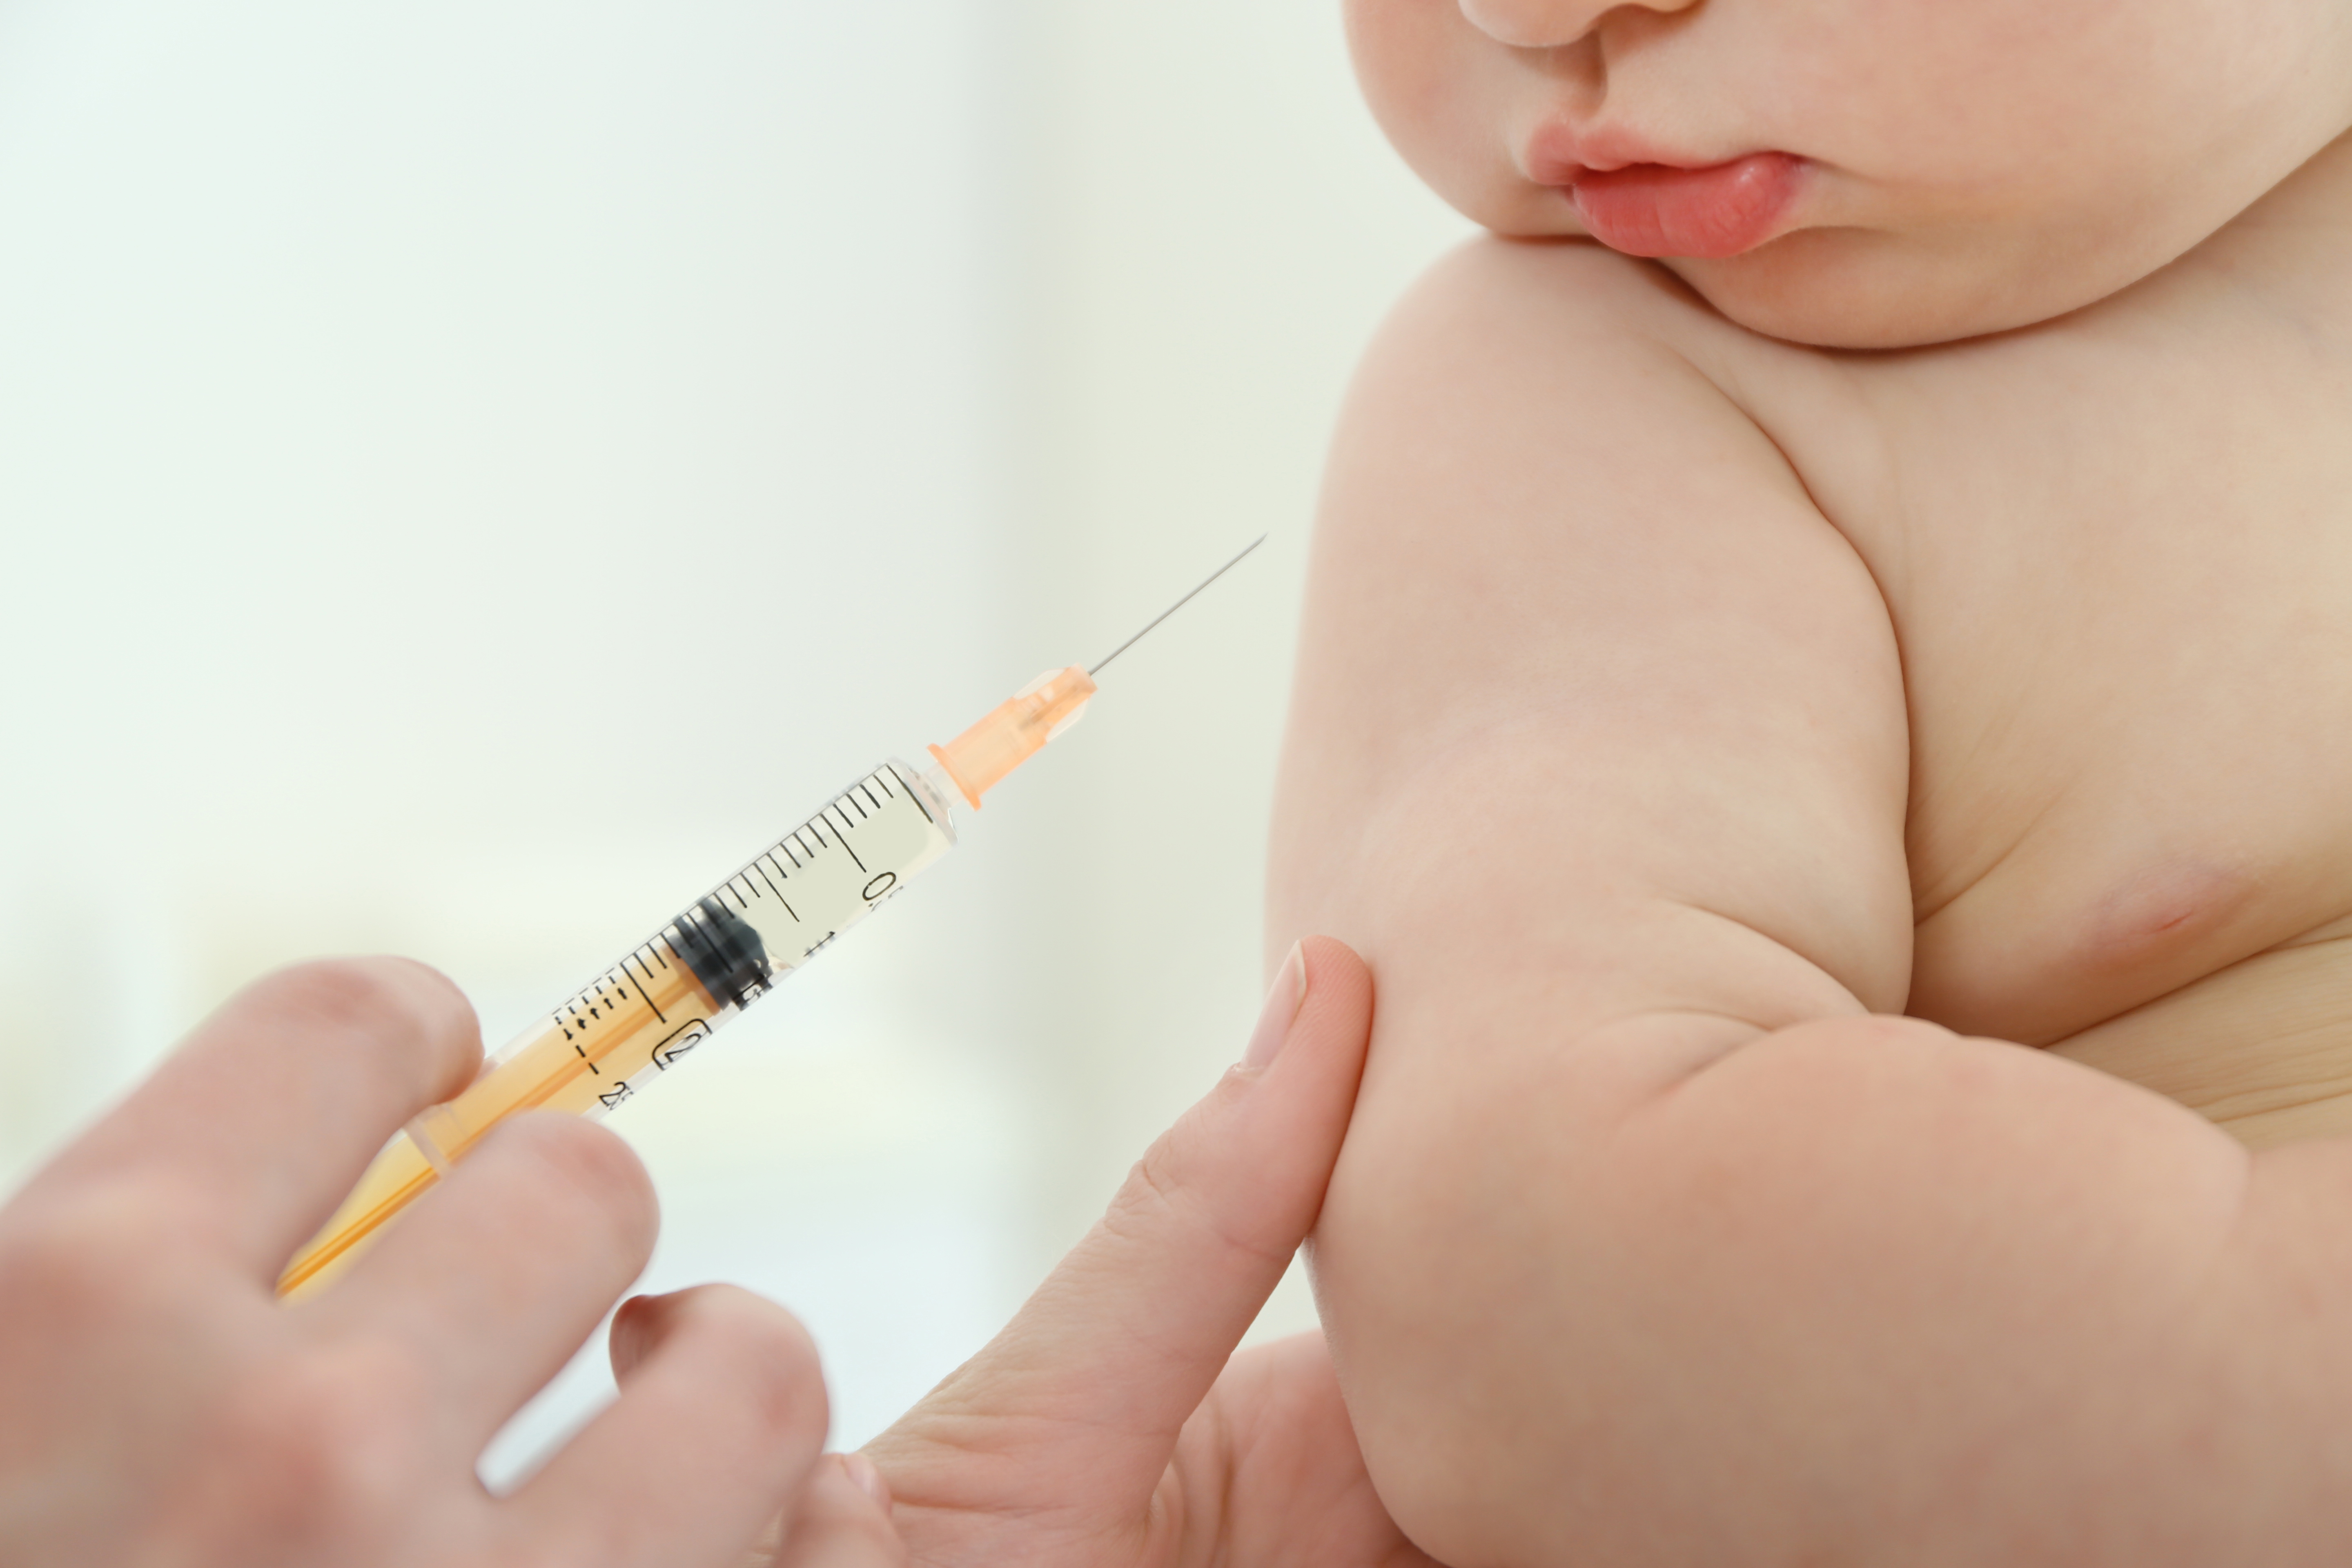 Bebeluși spitalizați, după ce au fost vaccinați din greșeală cu Pfizer în loc de vaccinul pentavalent